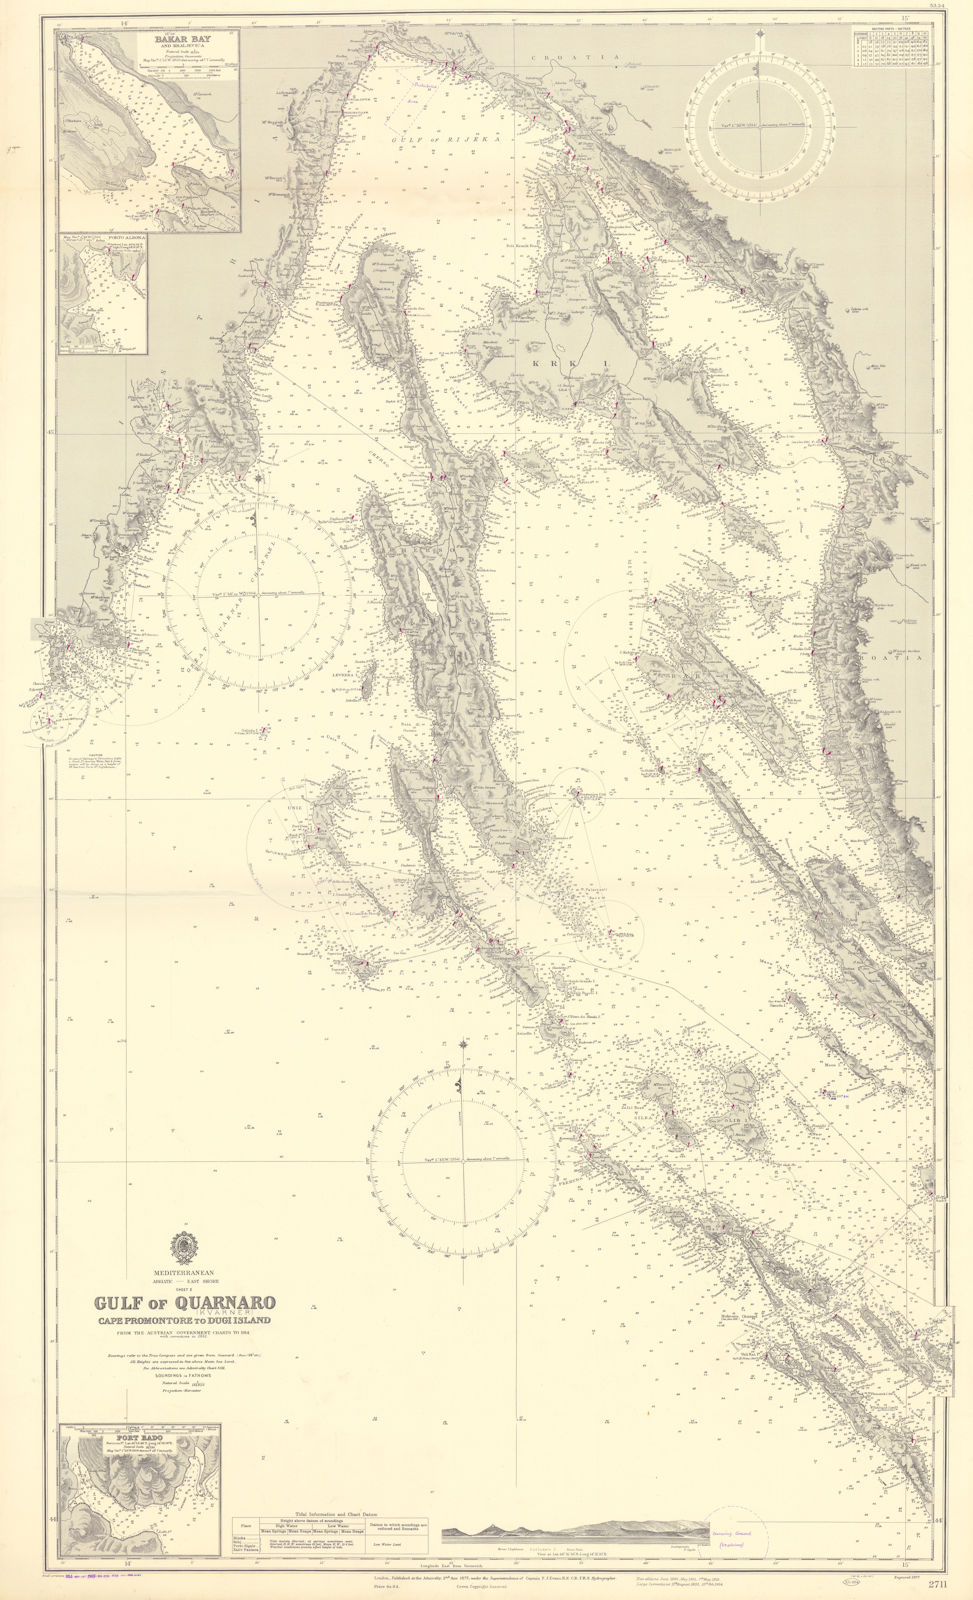 Quarnaro/Kvarner Gulf Croatia Dalmatia Krk Cres ADMIRALTY chart 1877 (1955) map